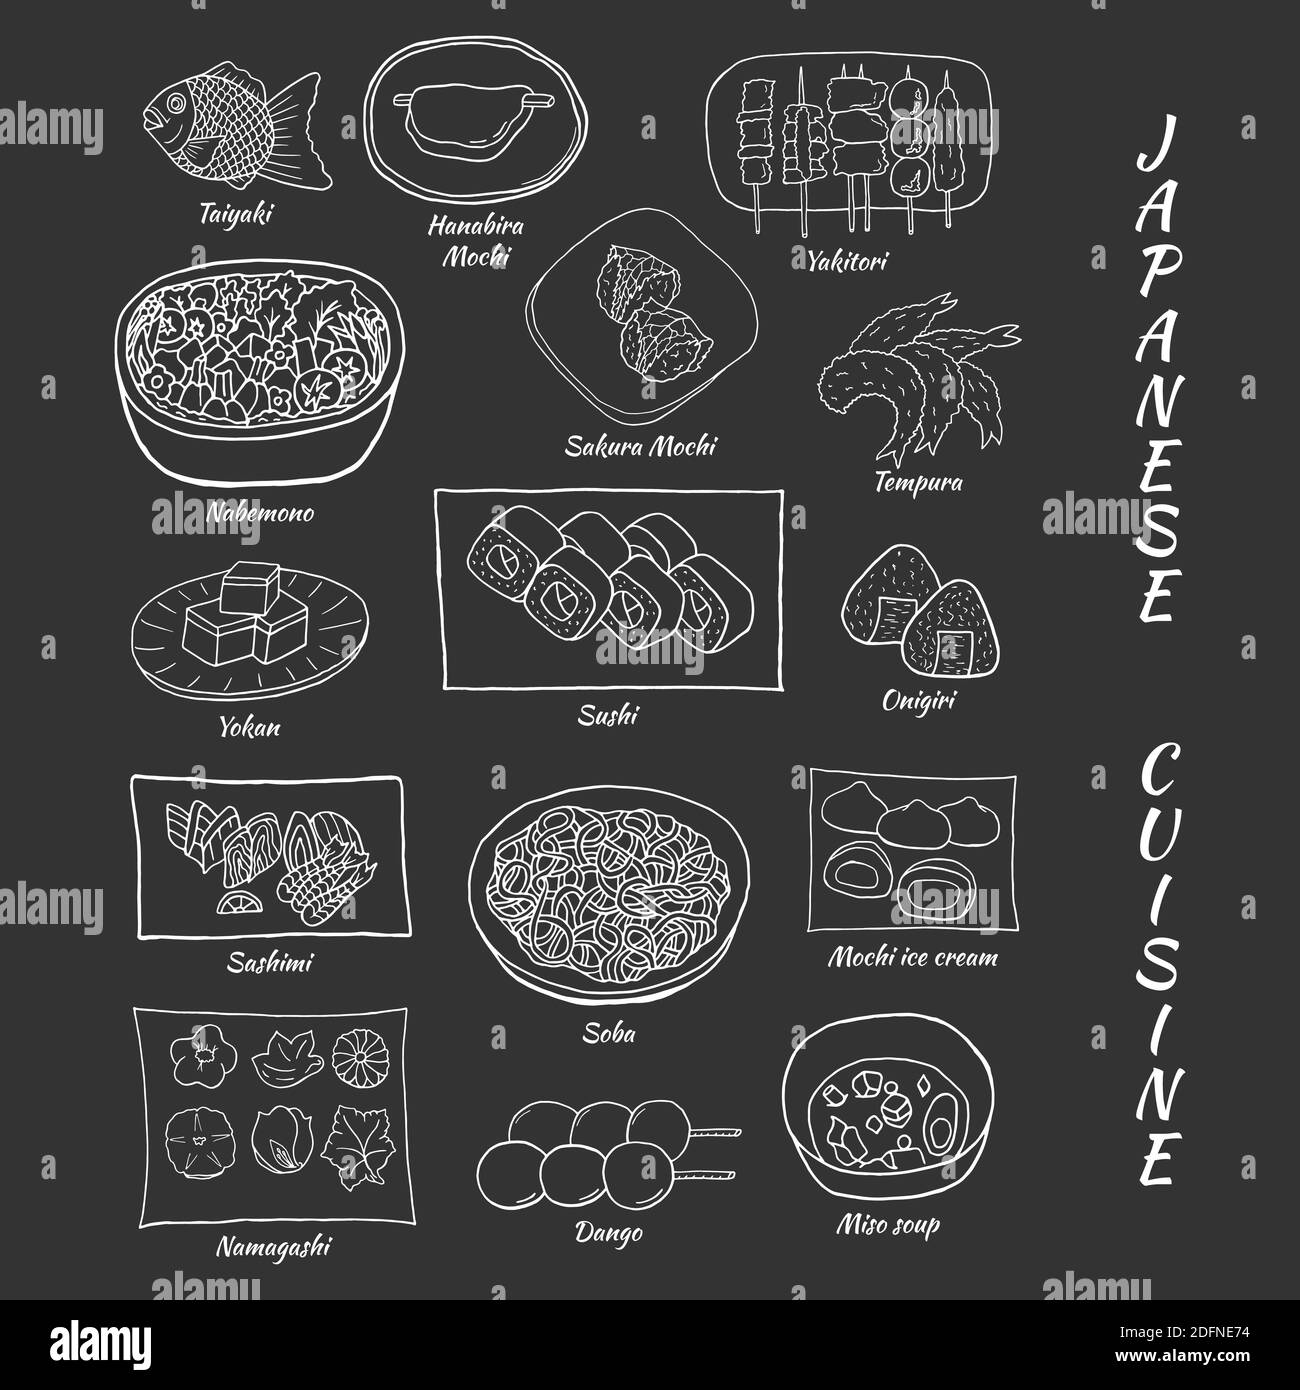 Vector hand drawn doodle set of Japanese cuisine. Design sketch elements for menu cafe, restaurant, label and packaging. Illustration on a dark backgr Stock Vector